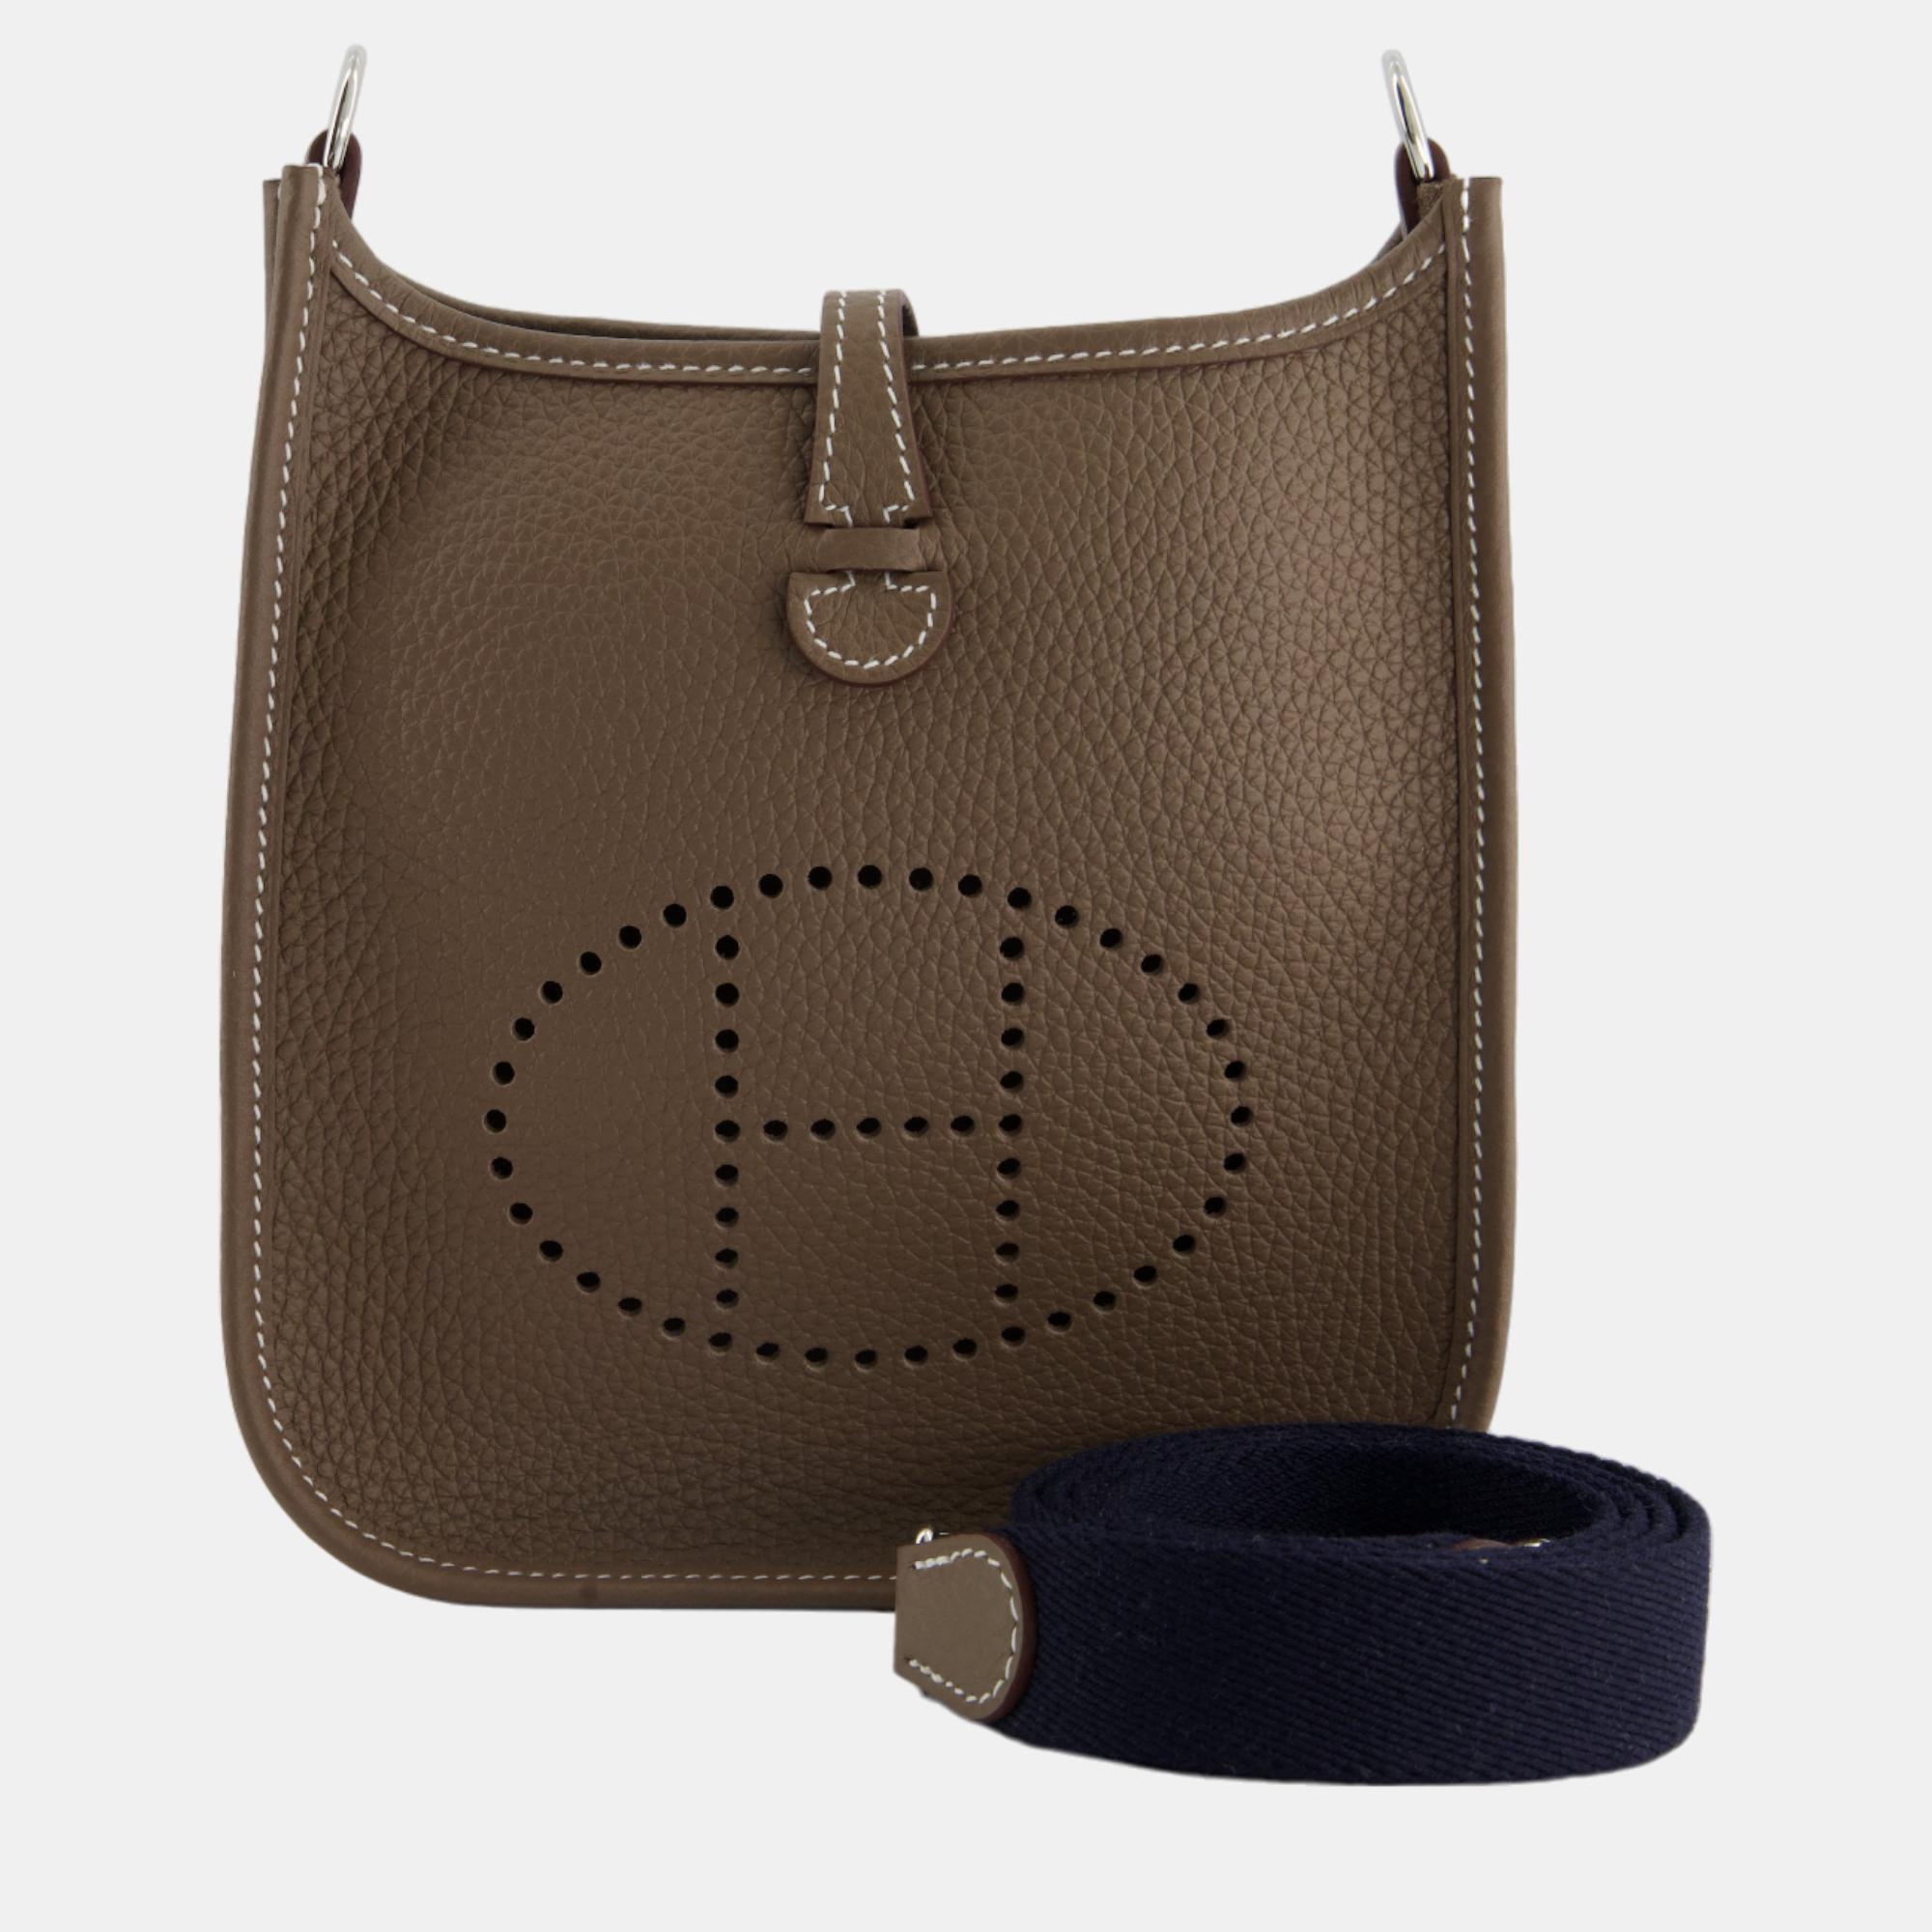 Chanel Deauville Raffia Tote Bag, New in Dustbag